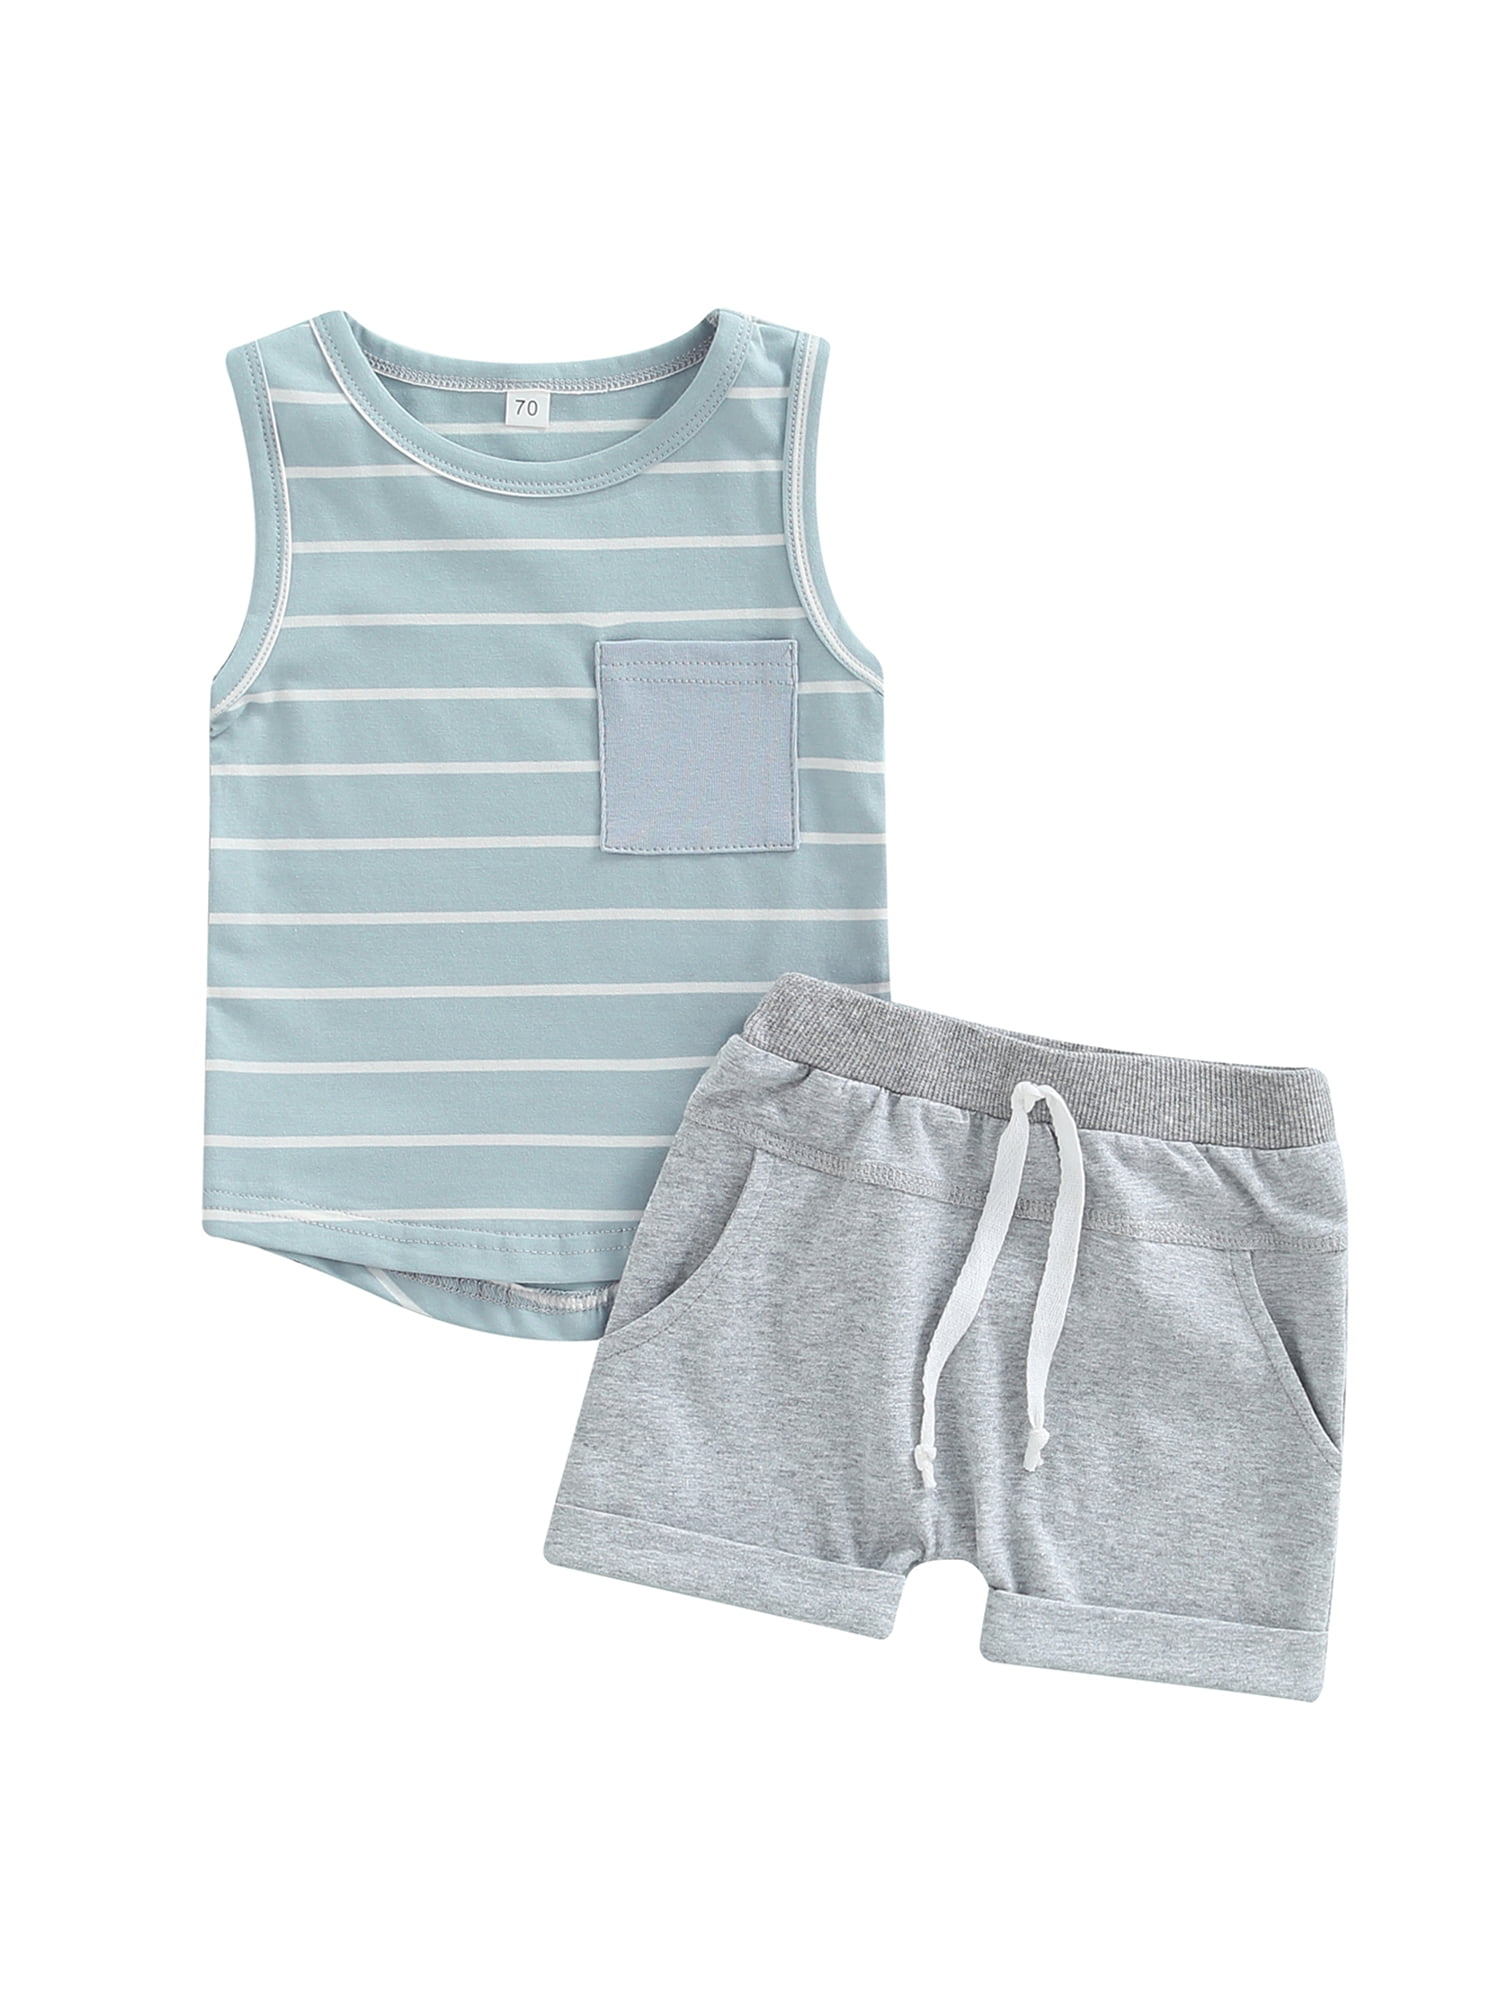 Infant Newborn Baby Boys T-shirt Tops Vest+Shorts Pants Outfit Clothes 2PCS 0-3Y 